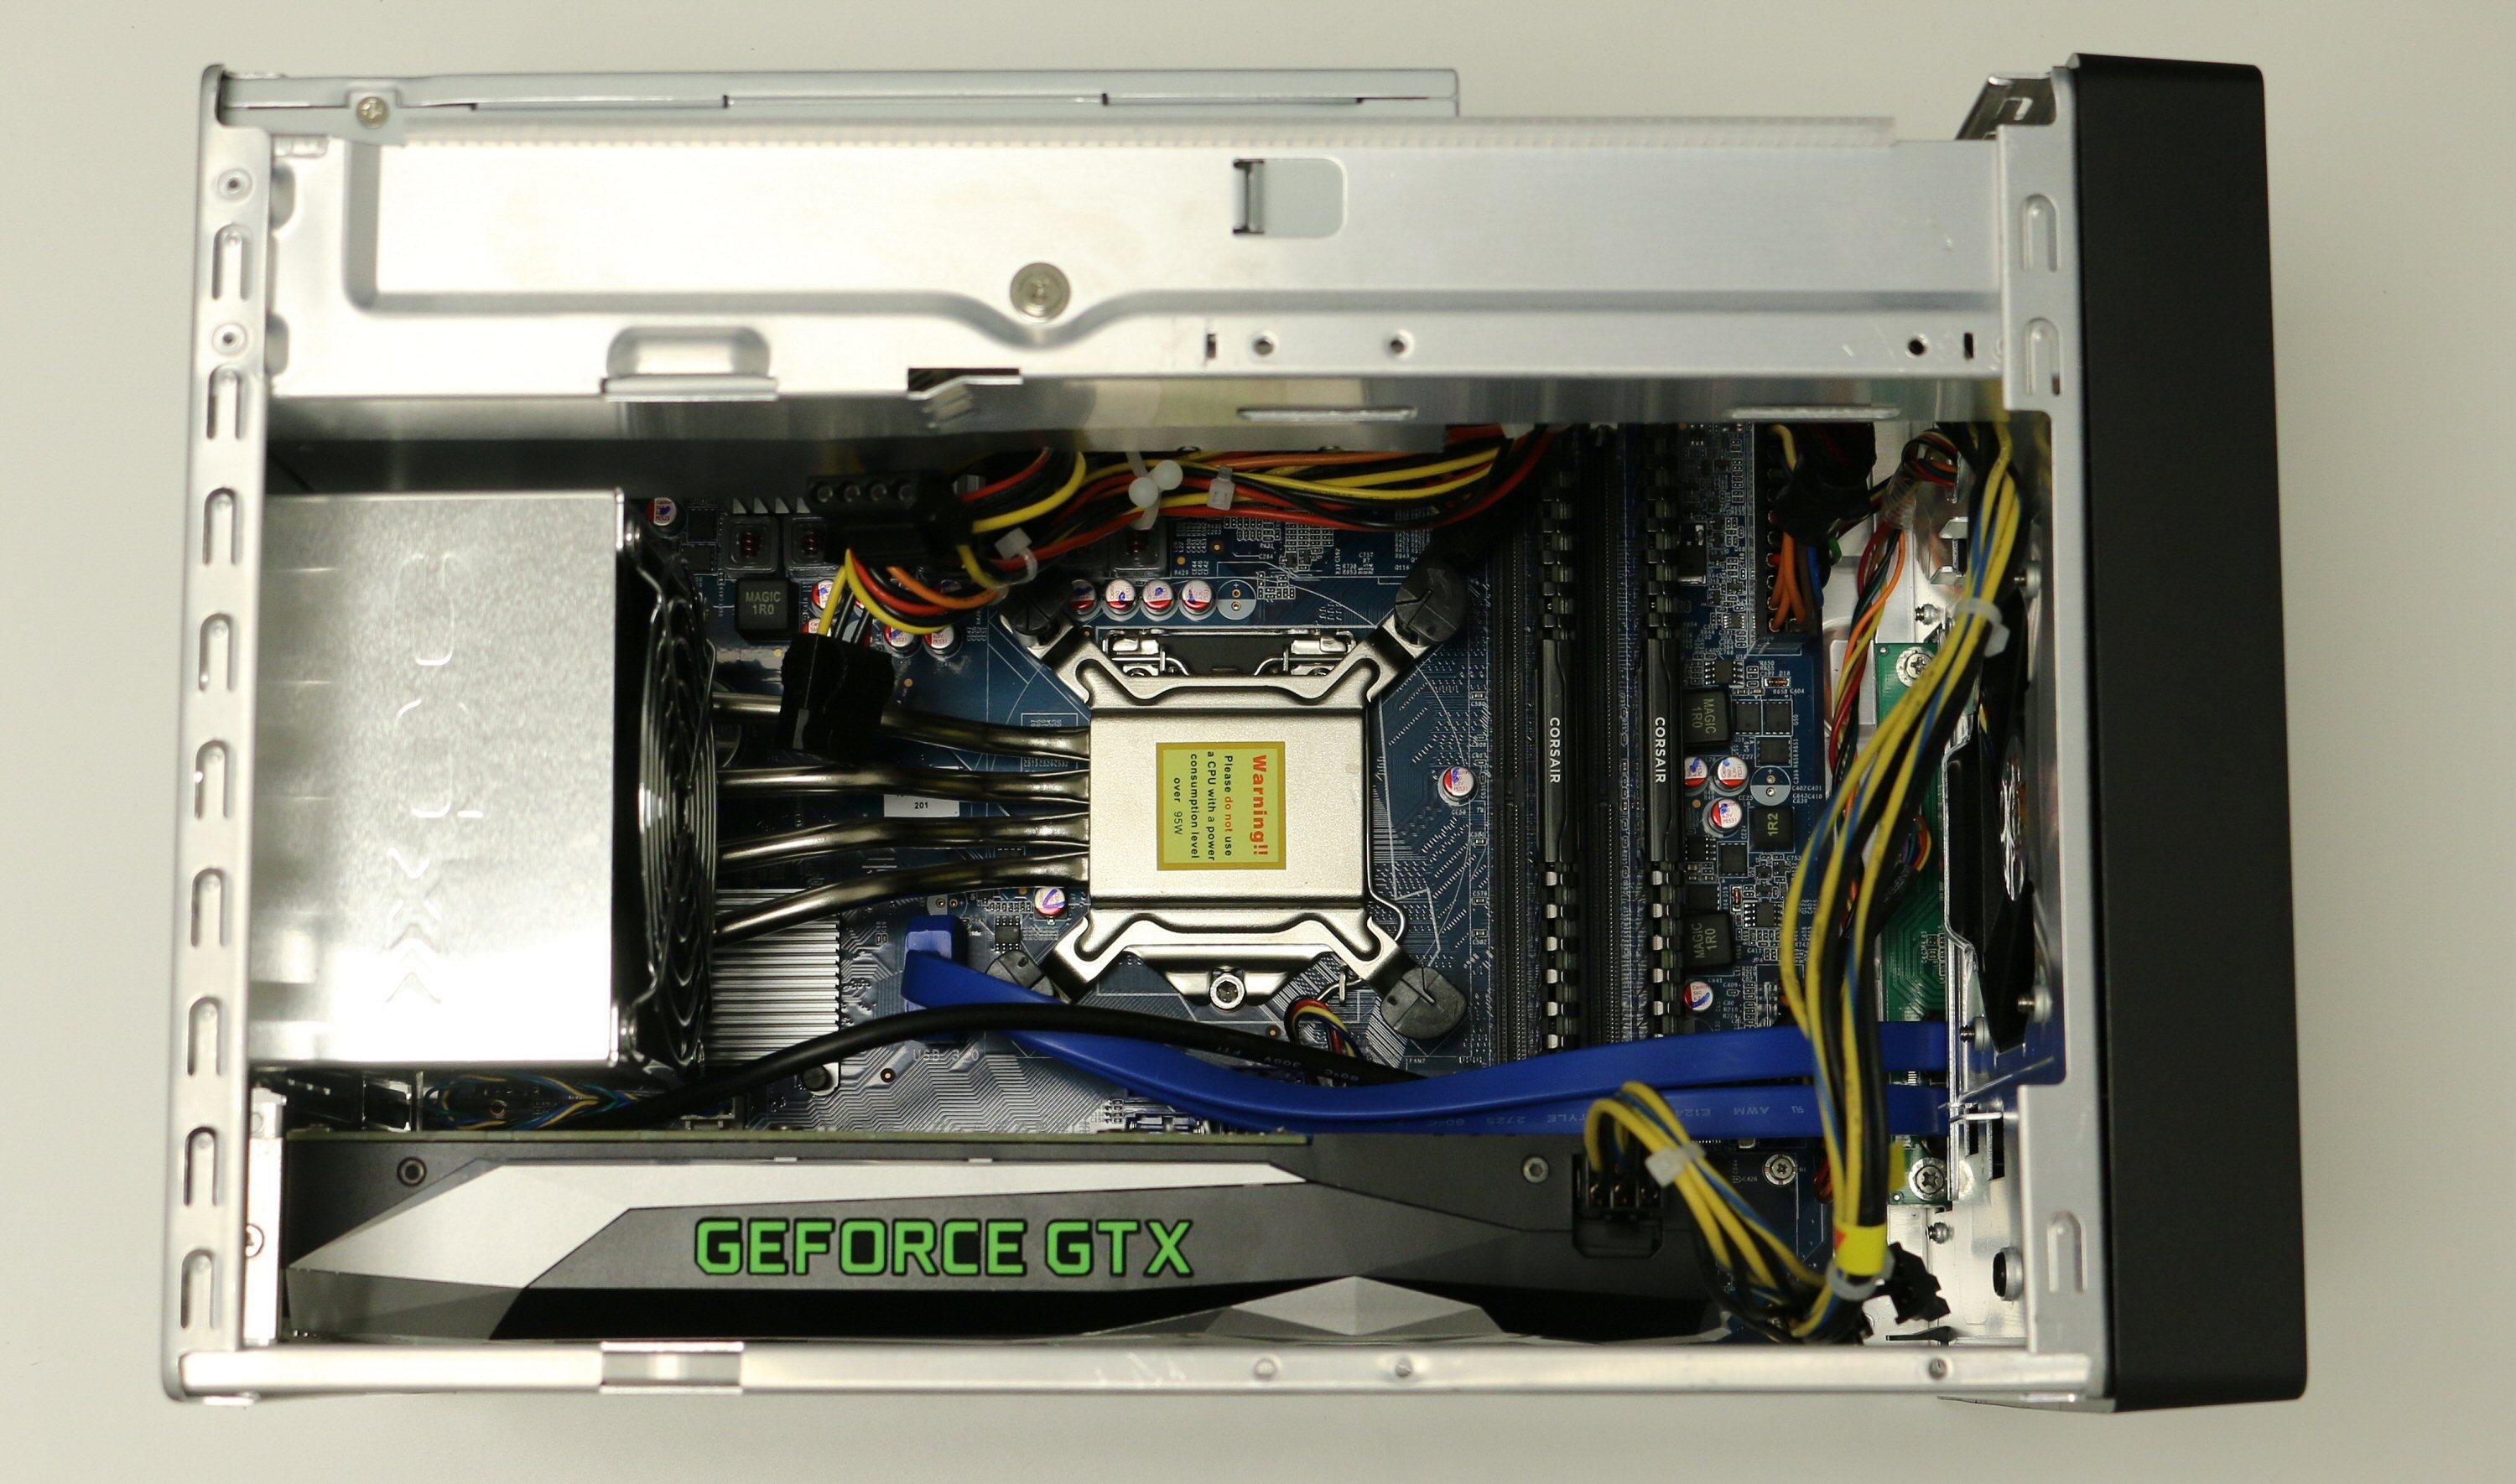 Med harddiskramma borte er det lett å komme til for installasjon. Her er CPU, RAM og GeForce GTX 1060 installert. M.2-SSD-en er skjult under grafikkortet. Merk for øvrig varmerørene som leder varmen fra prosessoren til kjøleanordningen i bakkant.